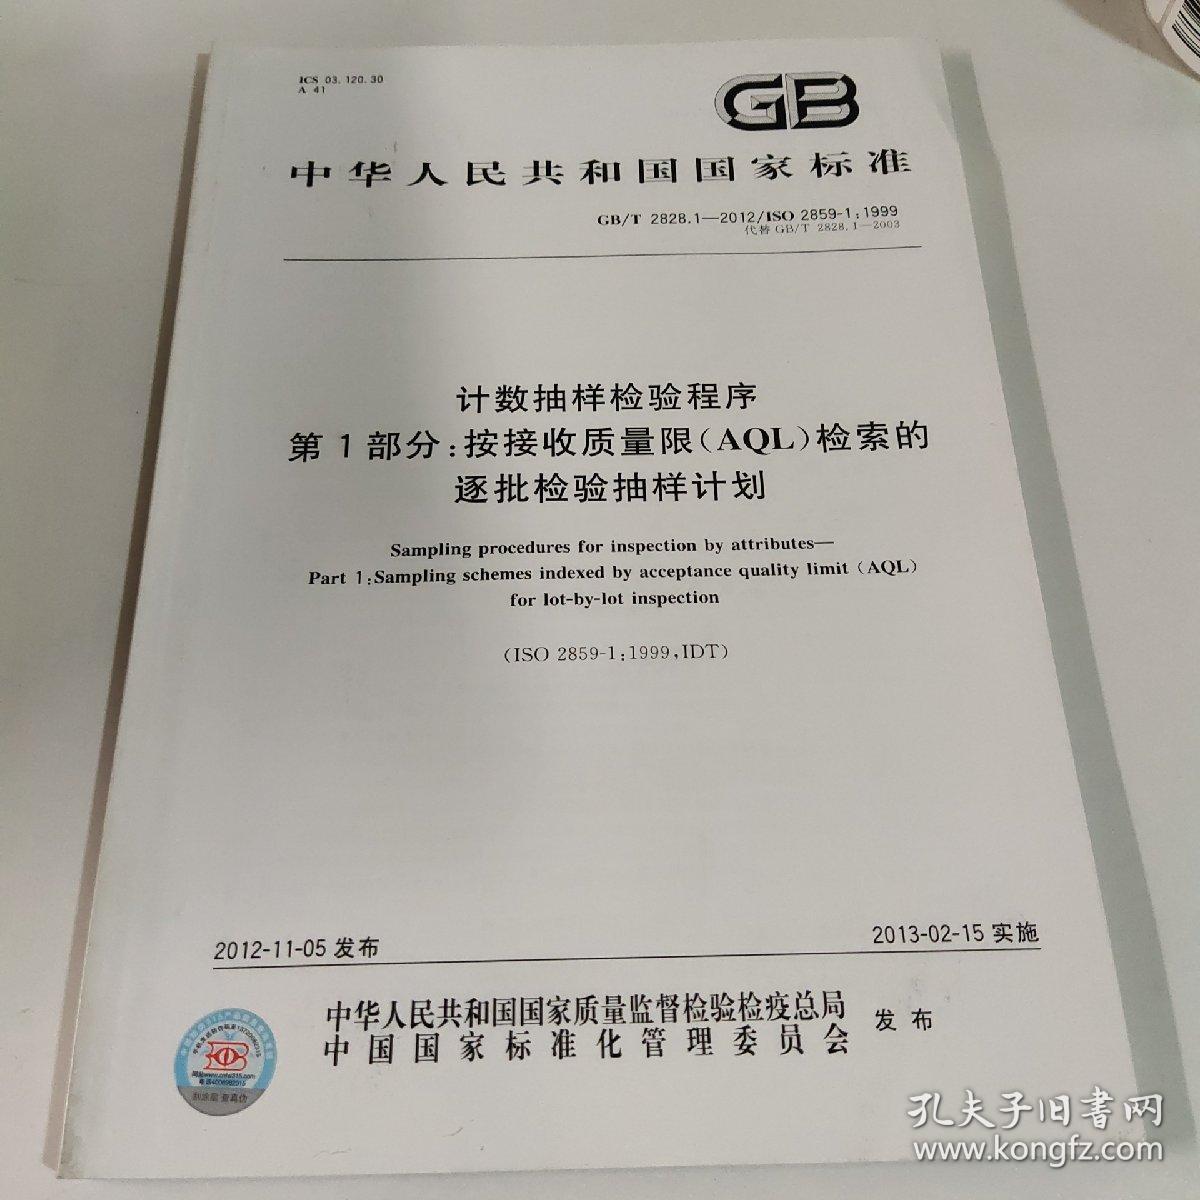 中华人民共和国国家标准
GB/T 2828.1-2012/ISO 2859-1:1999
计数抽样检验程序
第1部分：按接收质量限（AQL)检索的
逐批检验抽样计划